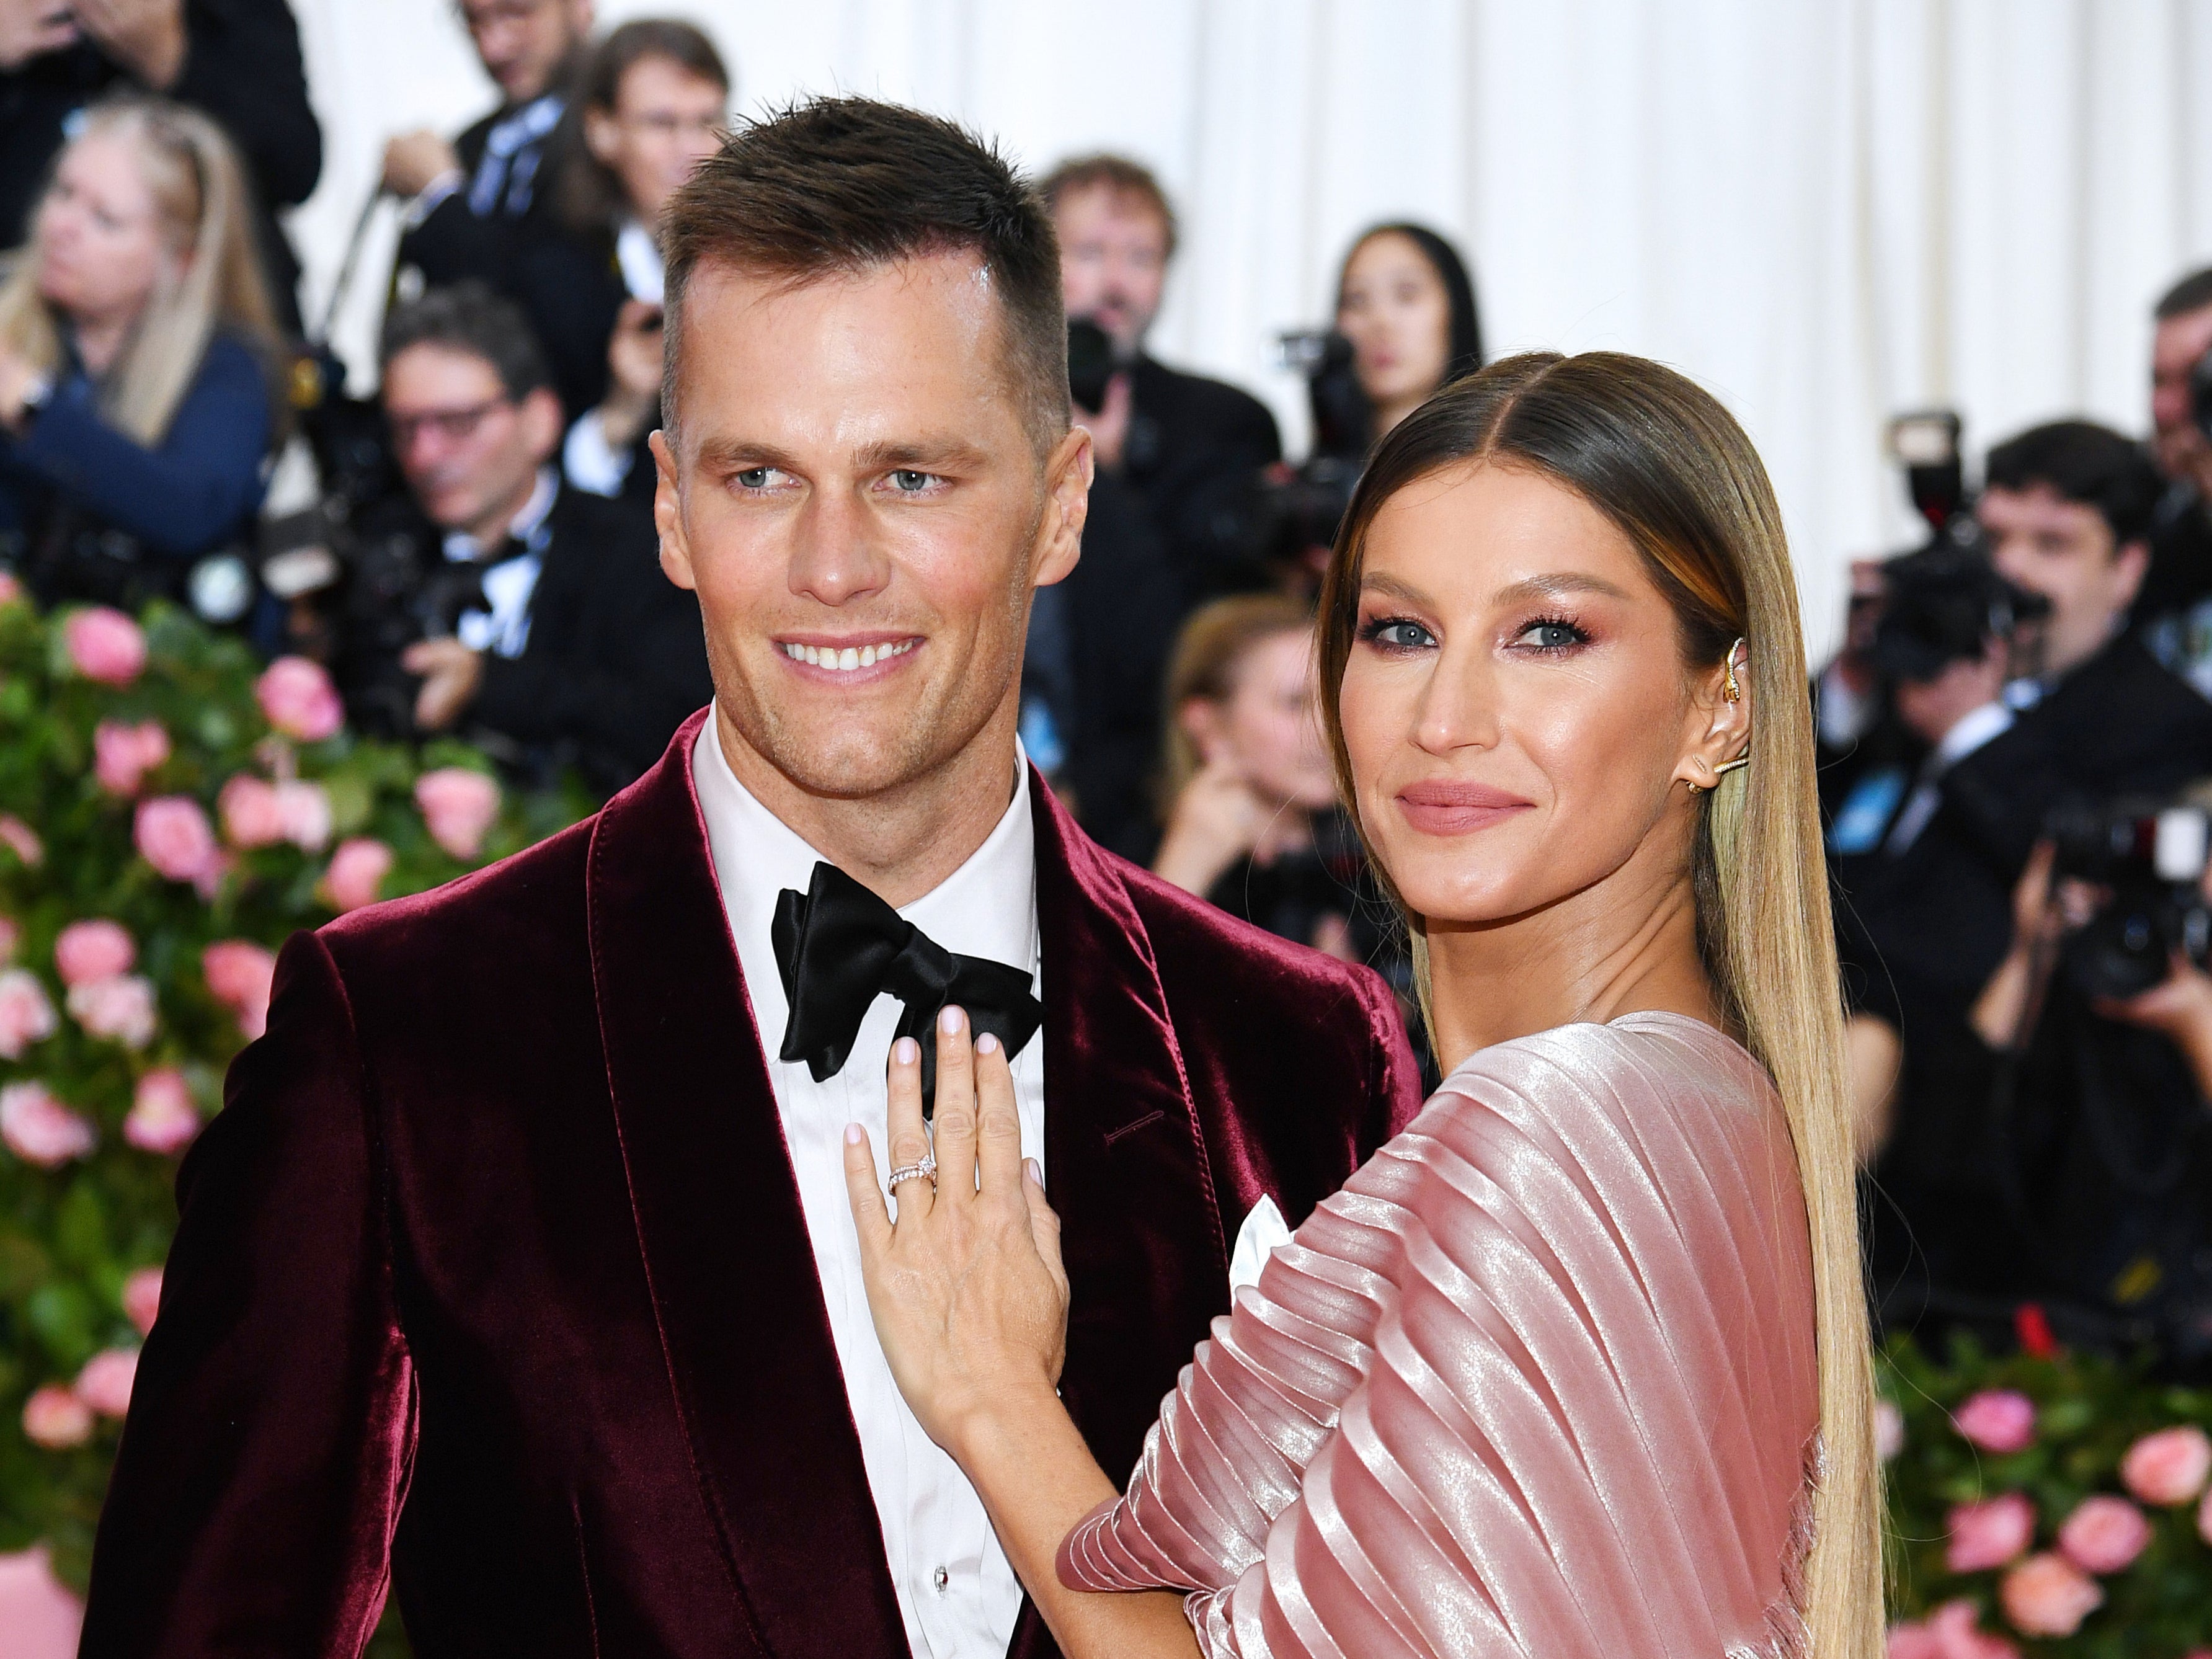 Gisele Bündchen and Tom Brady attend The 2019 Met Gala